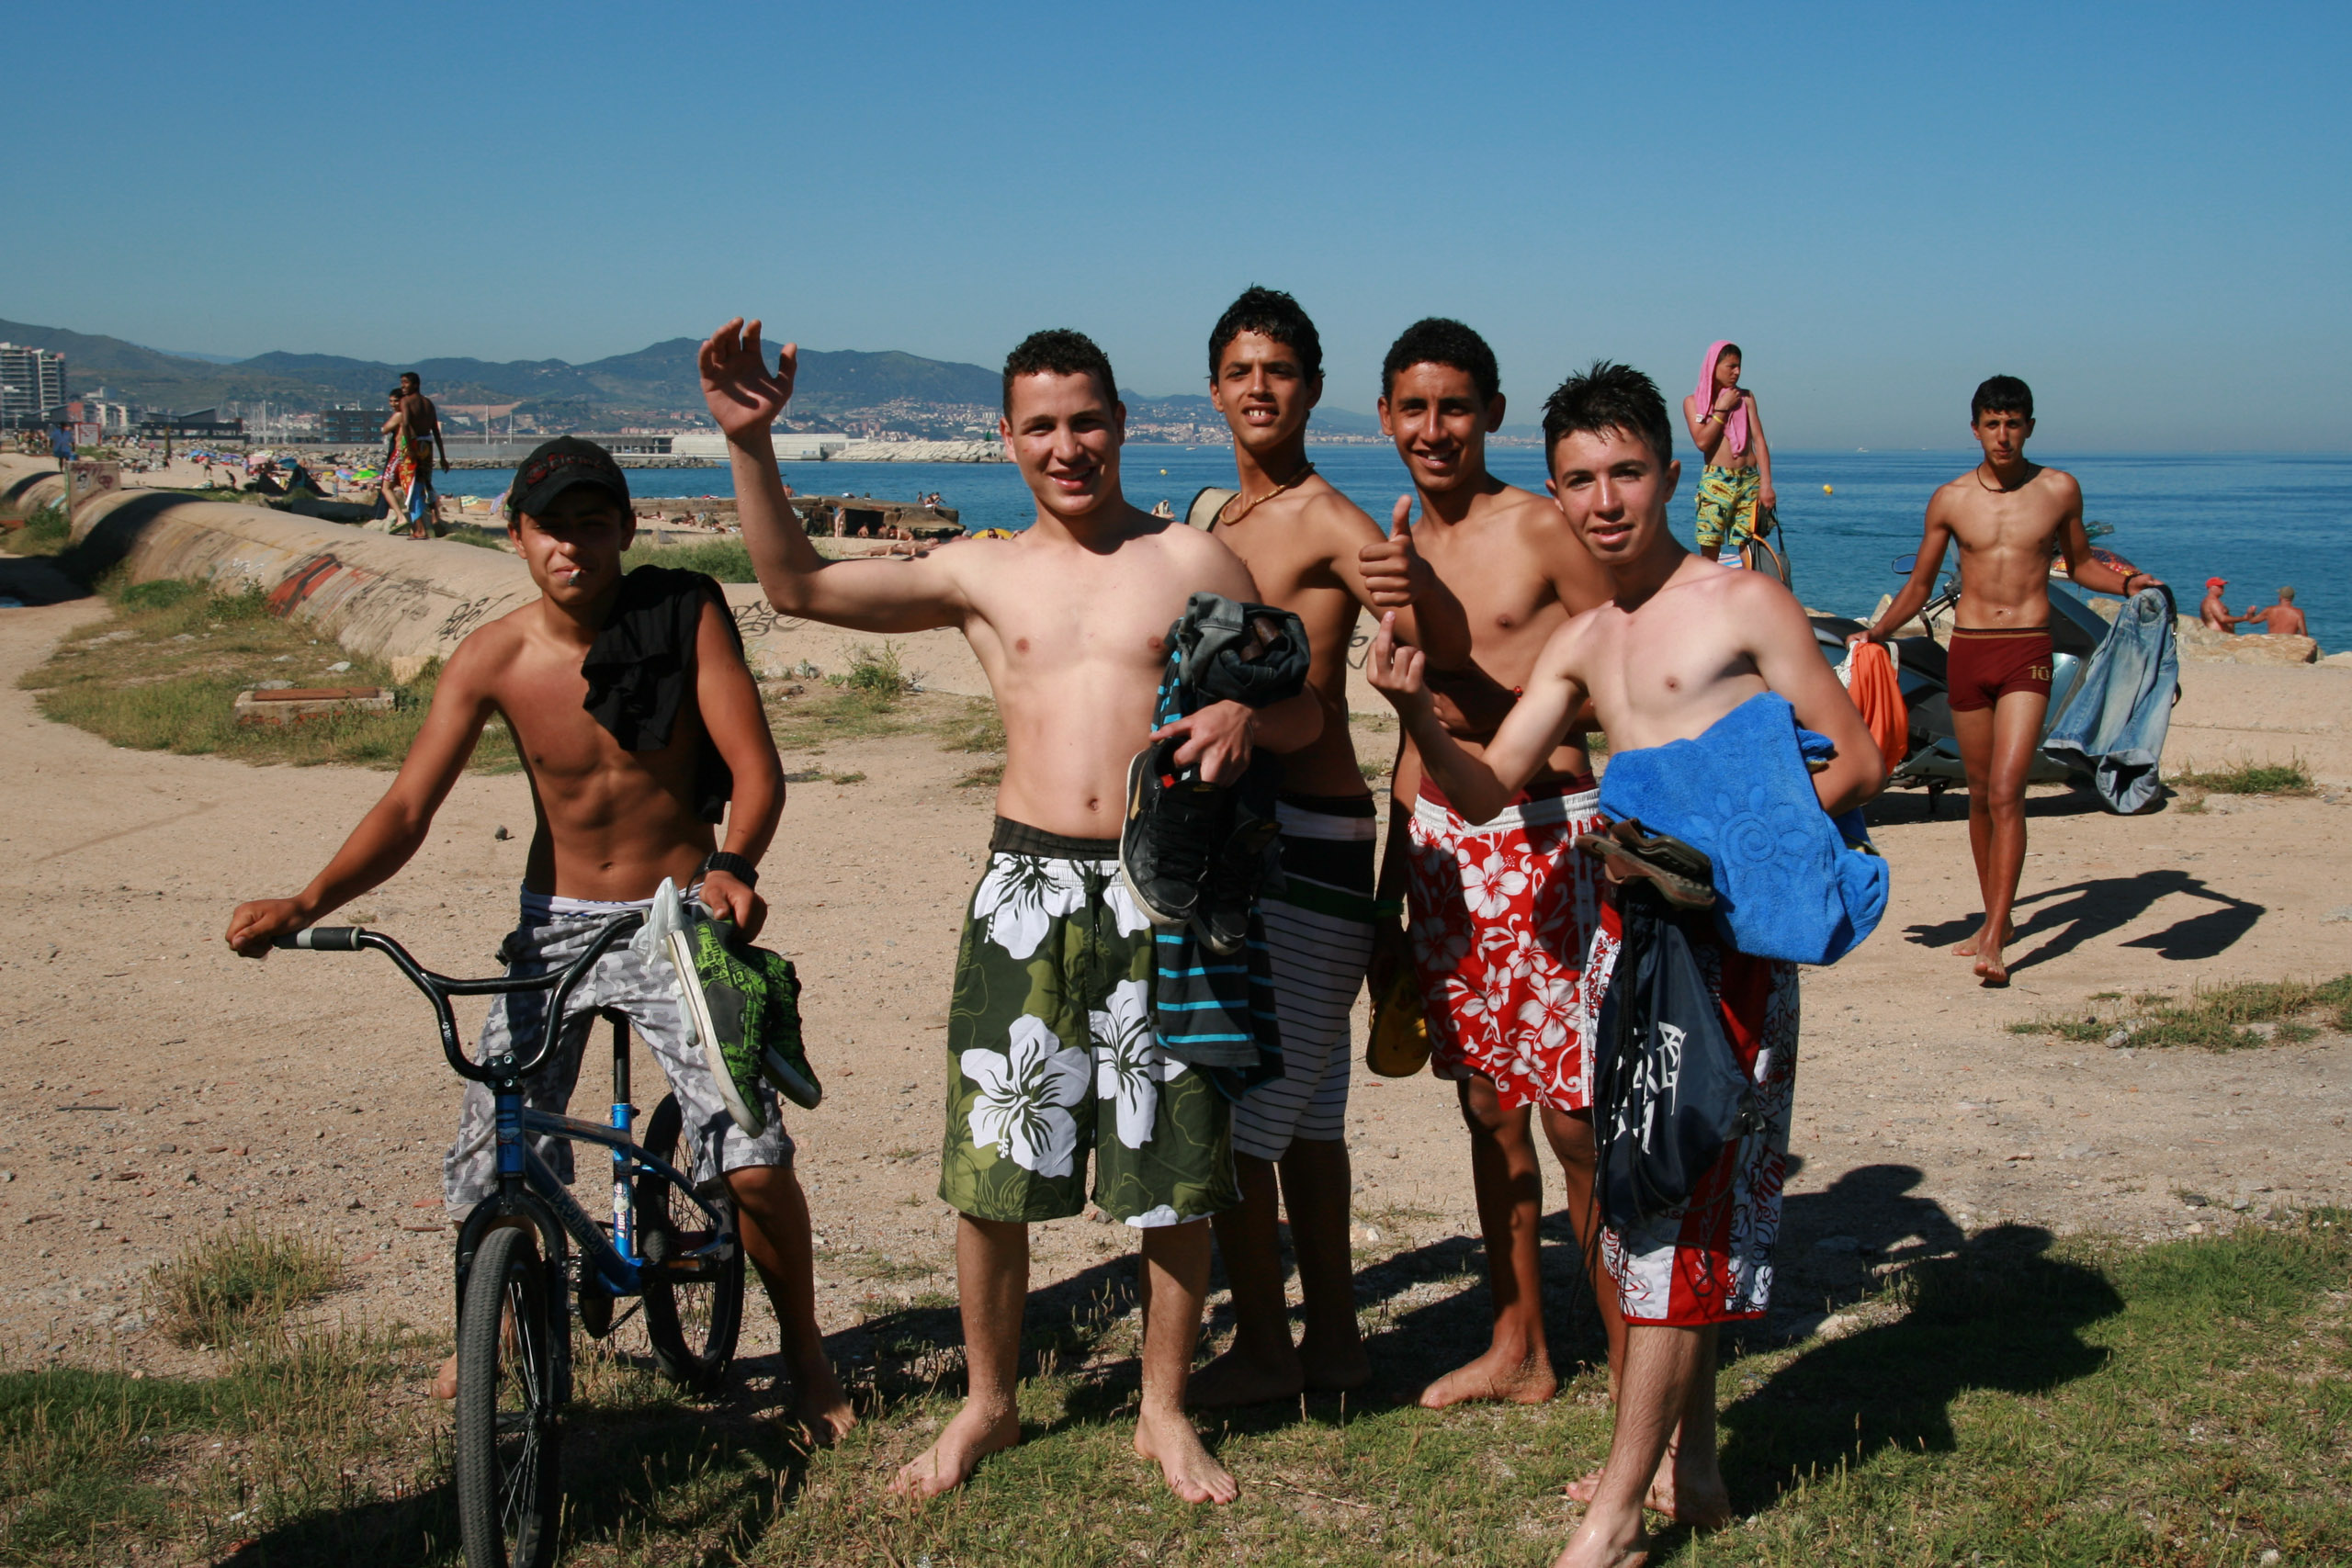 Boys on a beach